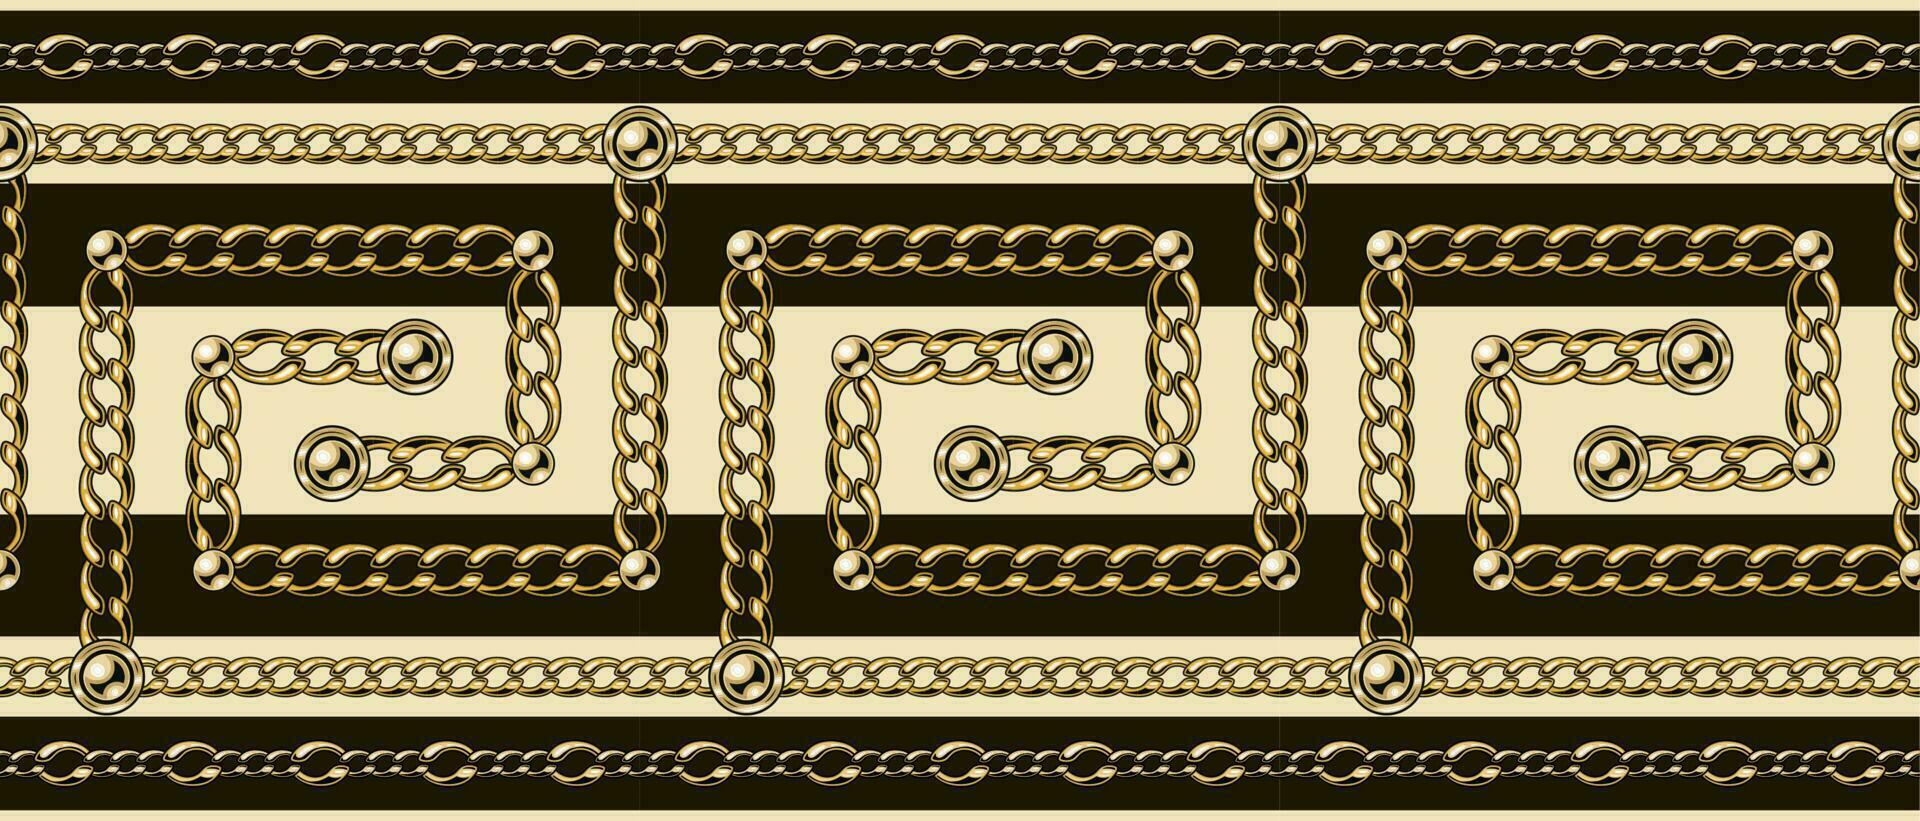 Grieks patroon grens met goud kettingen, kralen. beige, bruin kleuren, horizontaal strepen. traditioneel oude Grieks grens ornament. vector